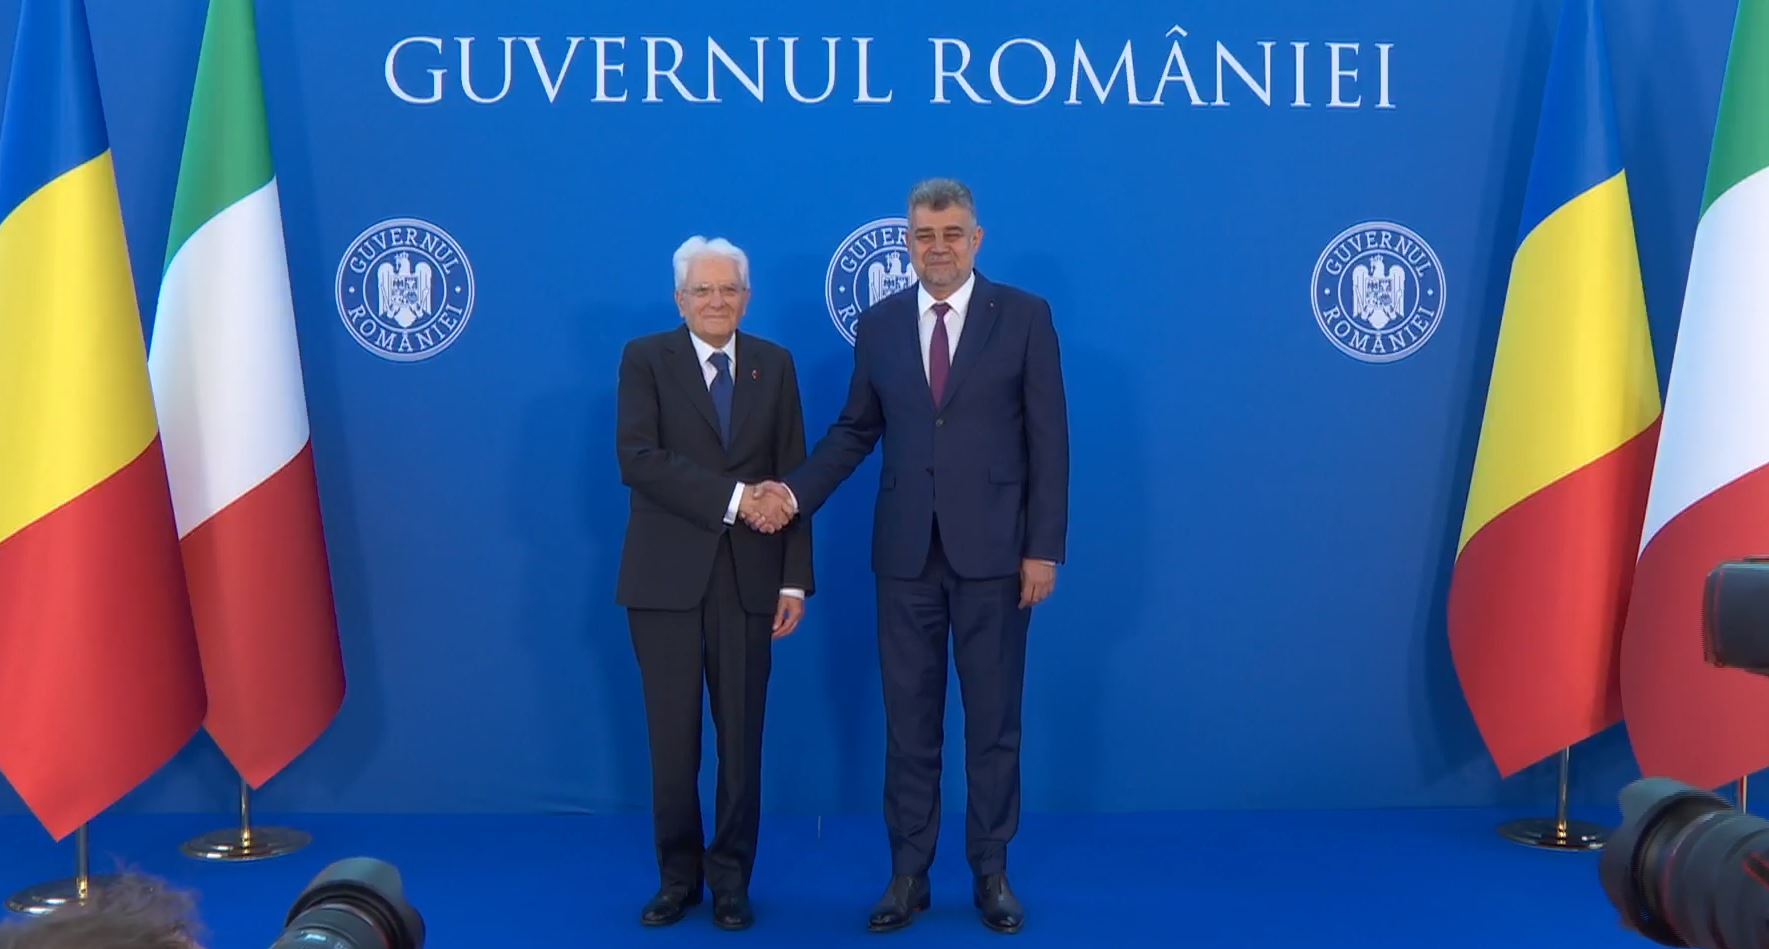 Il Primo Ministro Marcel Ciolacu, incontro con il Presidente della Repubblica